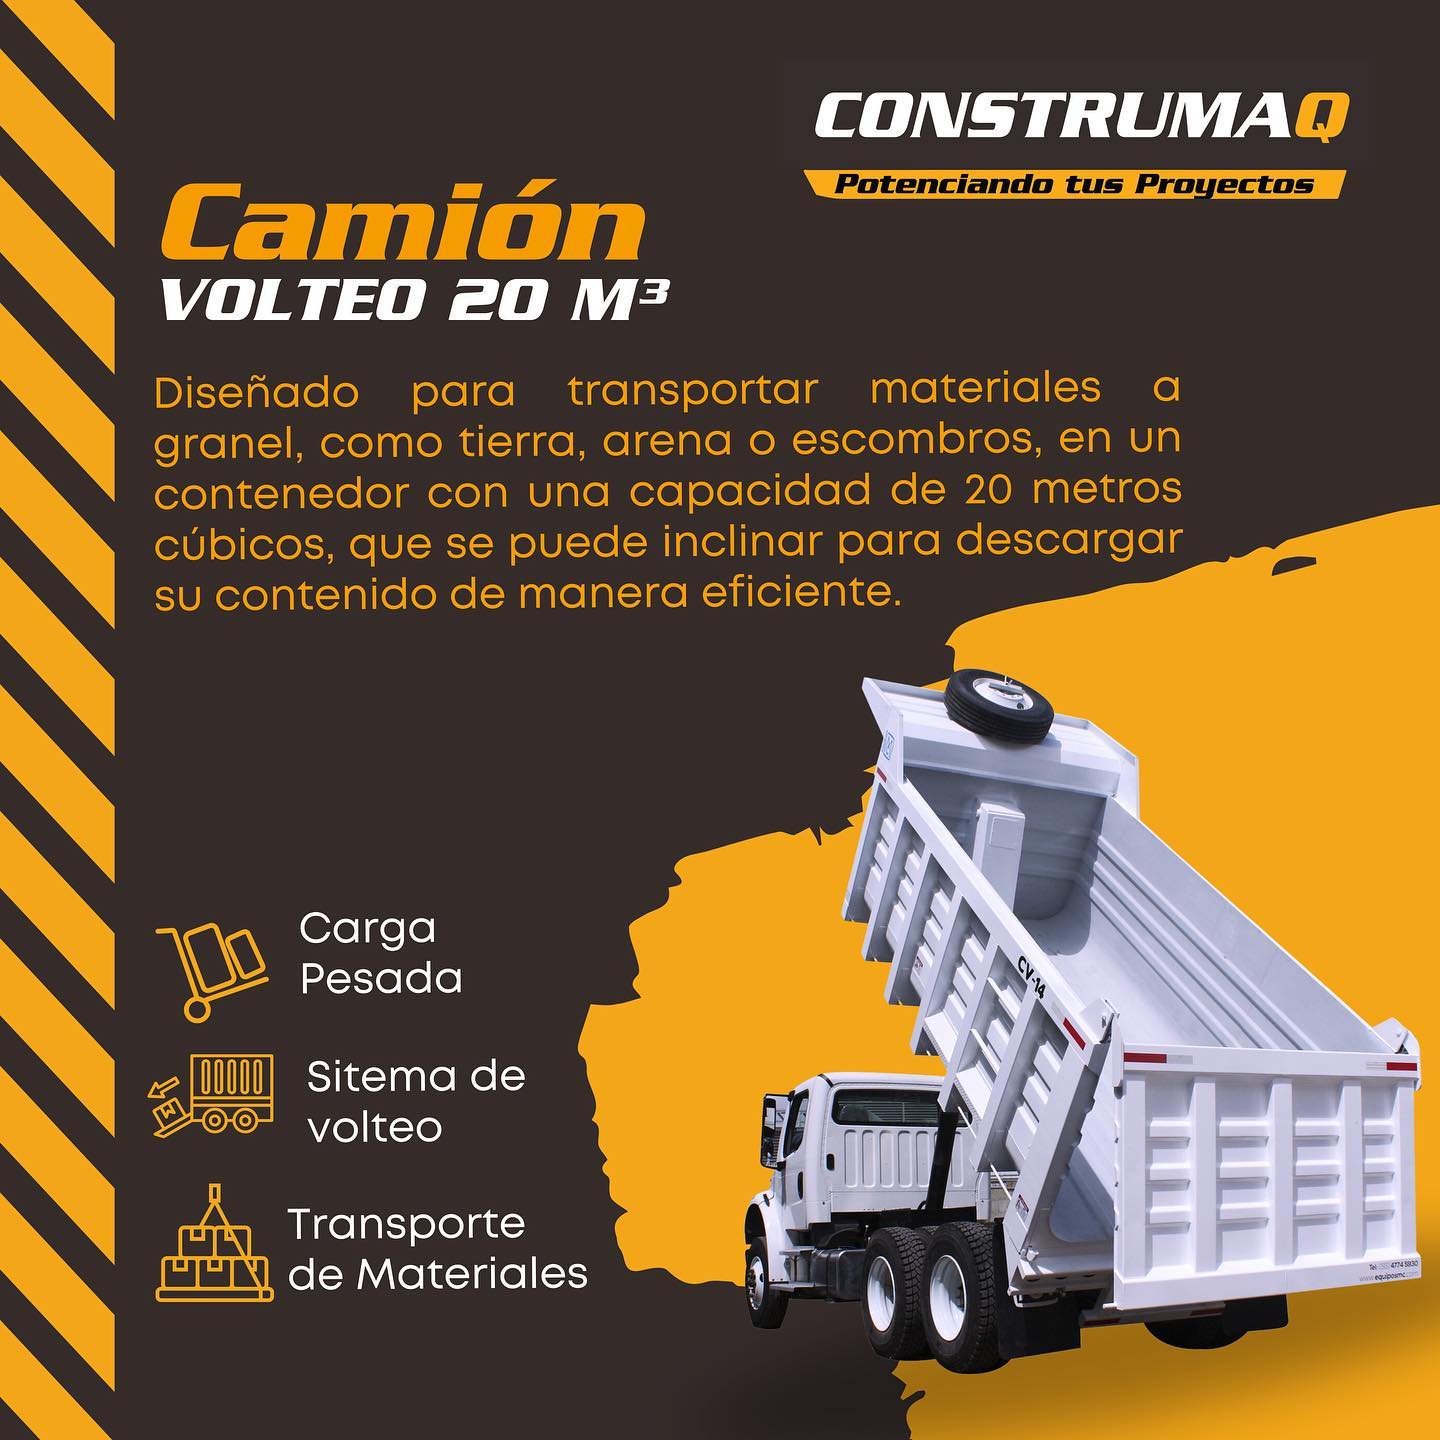 construmaq-alquiler-demaquinaria-camionvolteo20m3-elsalvador-elmanualdelconstructor01